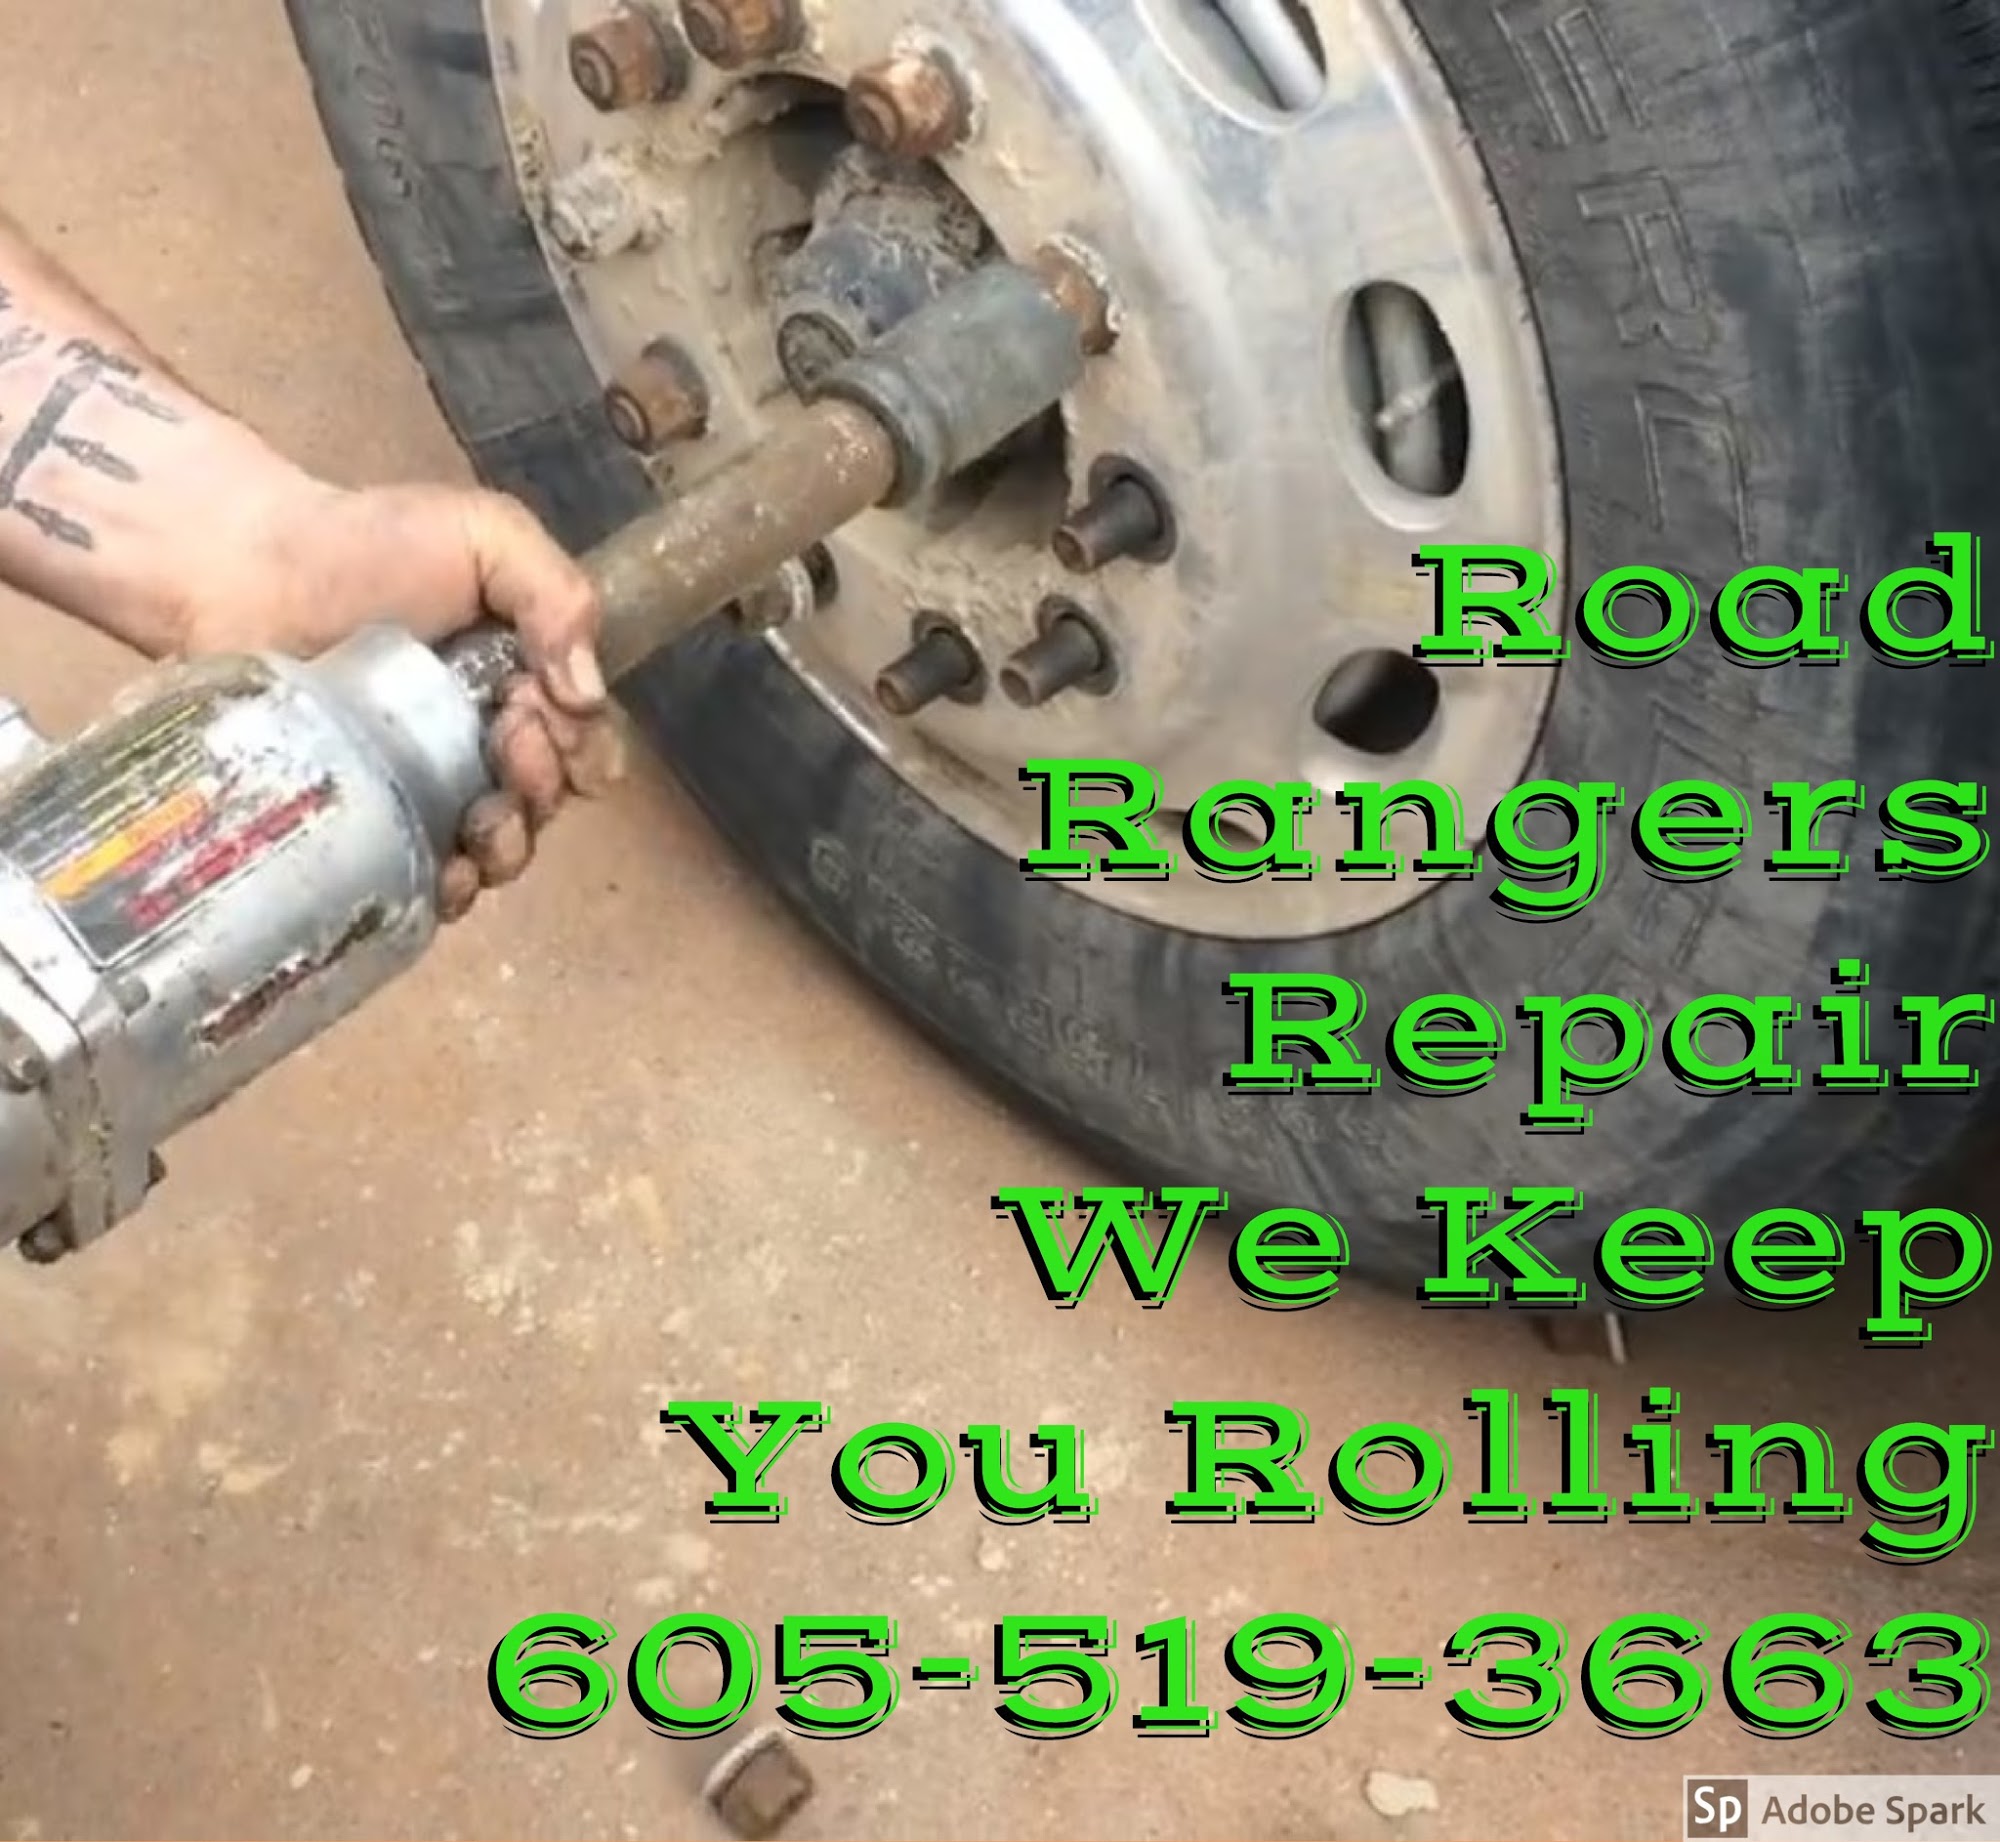 Road Rangers Repair & Trucking